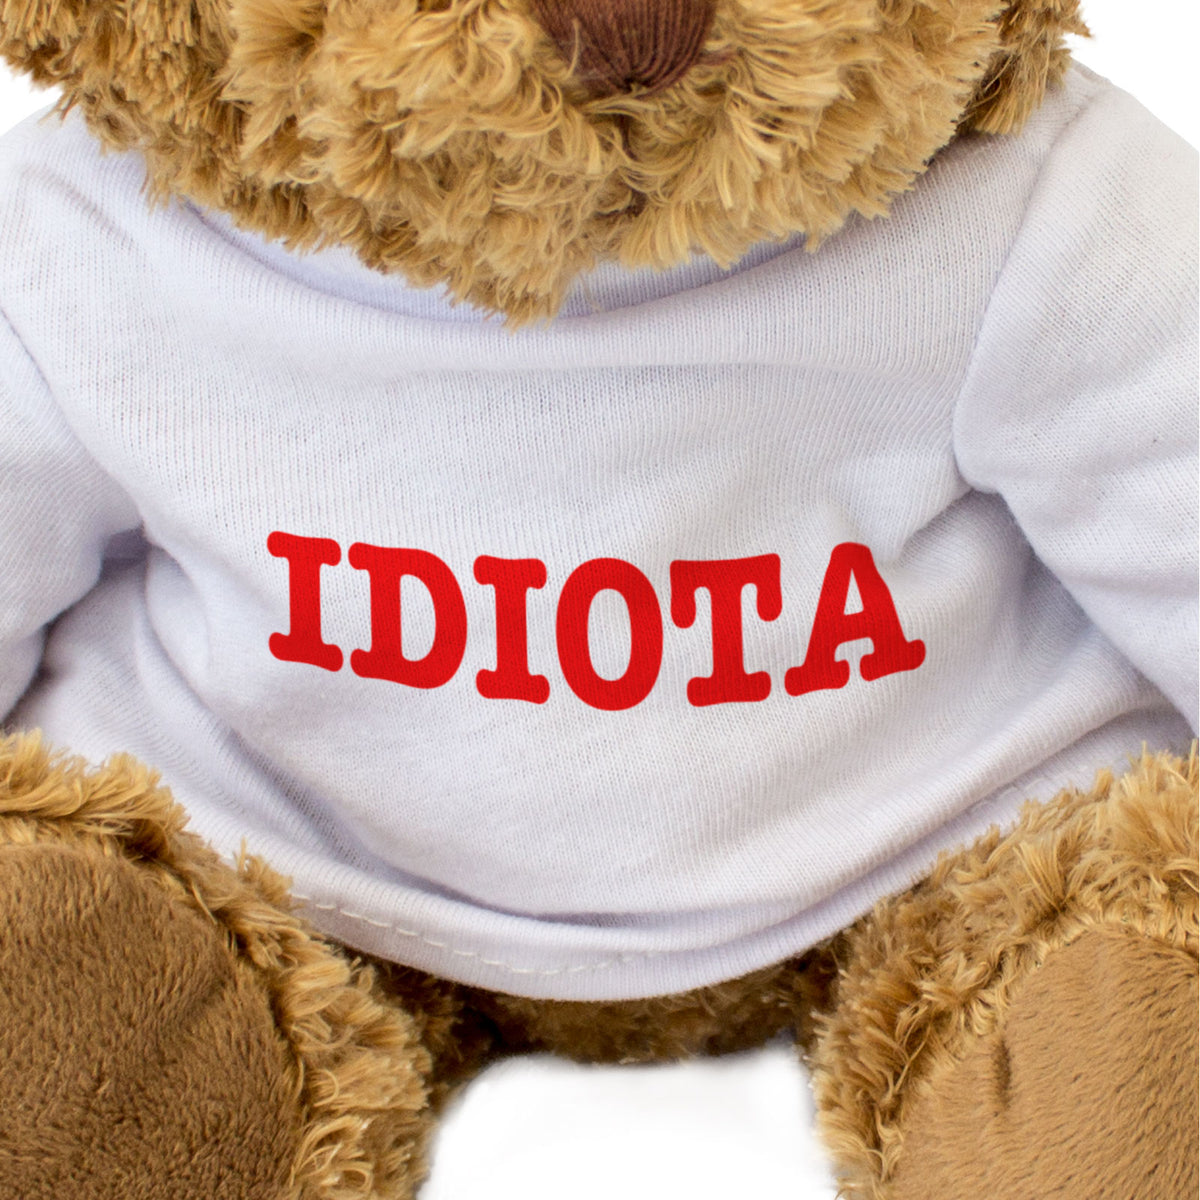 Idiota - Teddy Bear